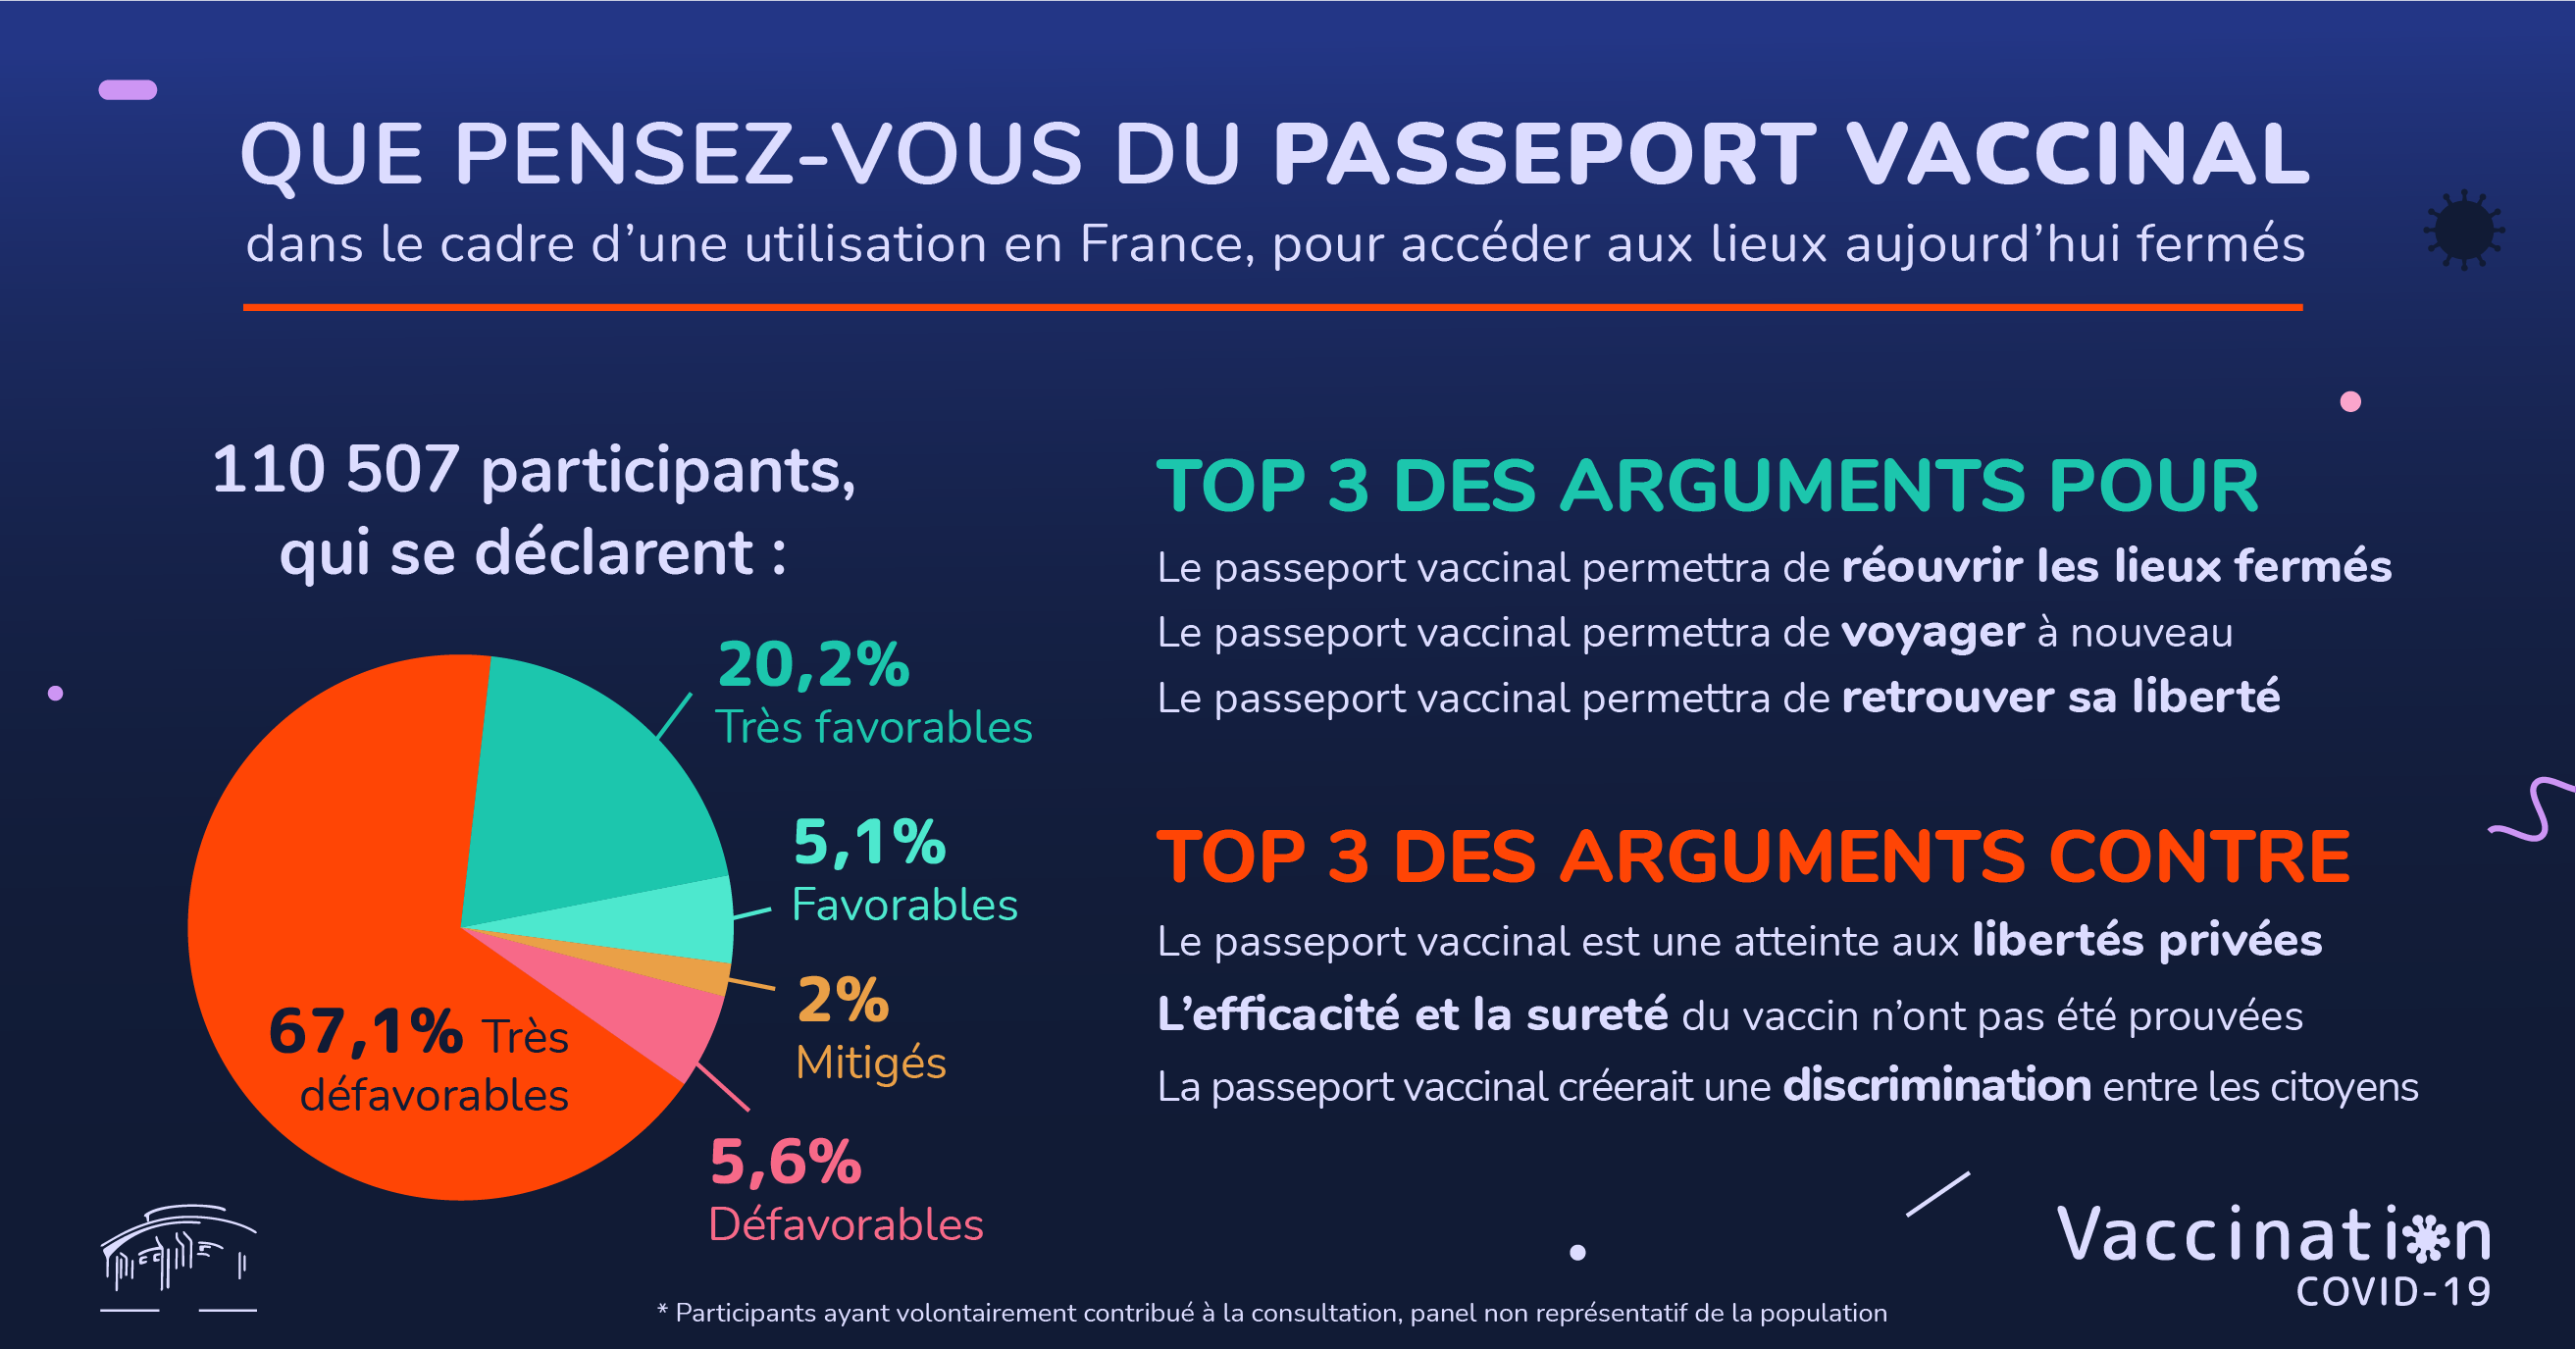 CESE on Twitter: "🔴 Consultation sur le #PasseportVaccinal : les résultats  sont en ligne ! Plus de 110 000 participants ont donné leur avis sur ce  dispositif au cours des 3 semaines